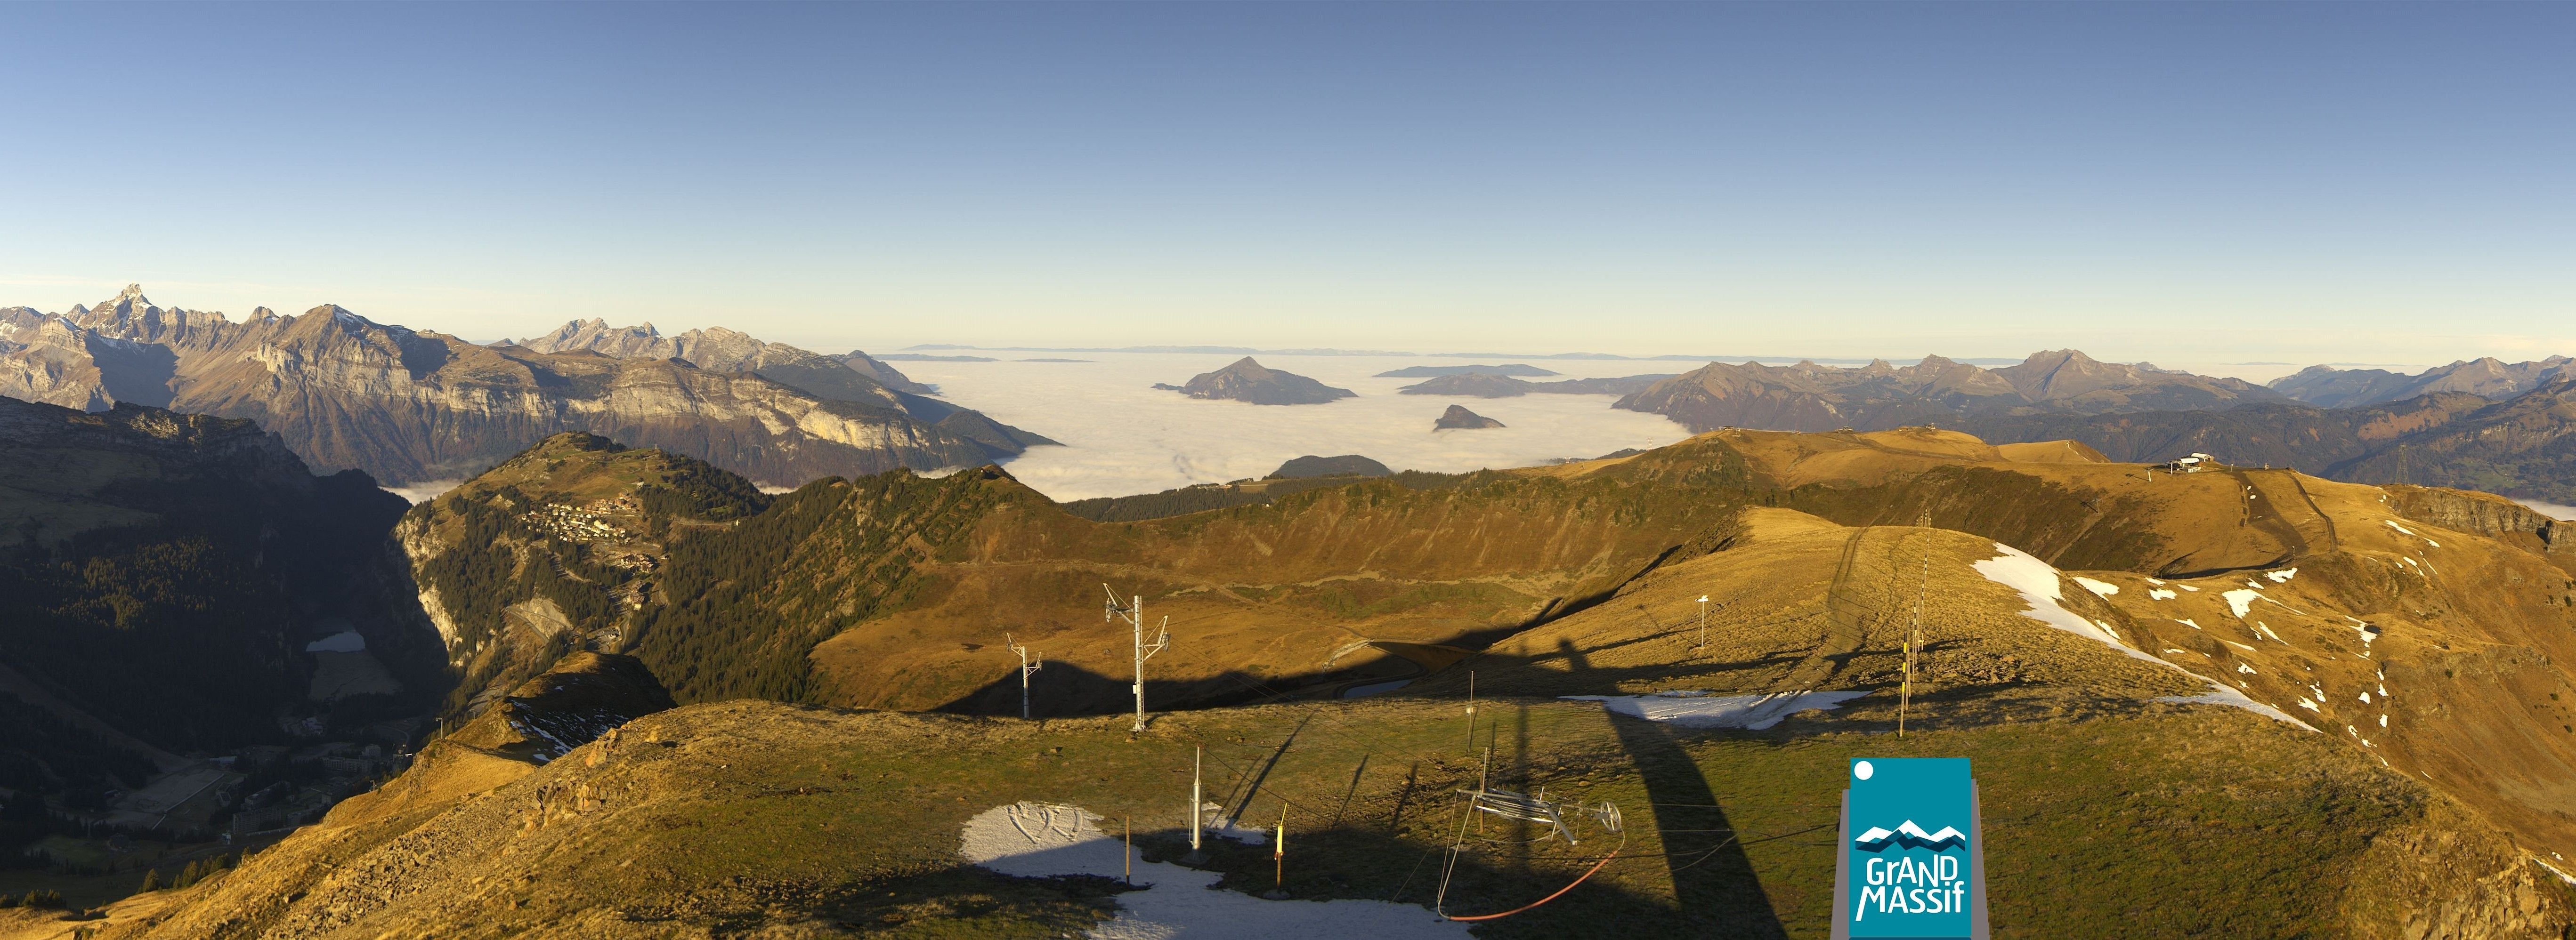 Een beeld dat we in de komende dagen meer gaan zien in de Alpen: stralend zonnig in het hooggebergte en een wolkensoep in de dalen